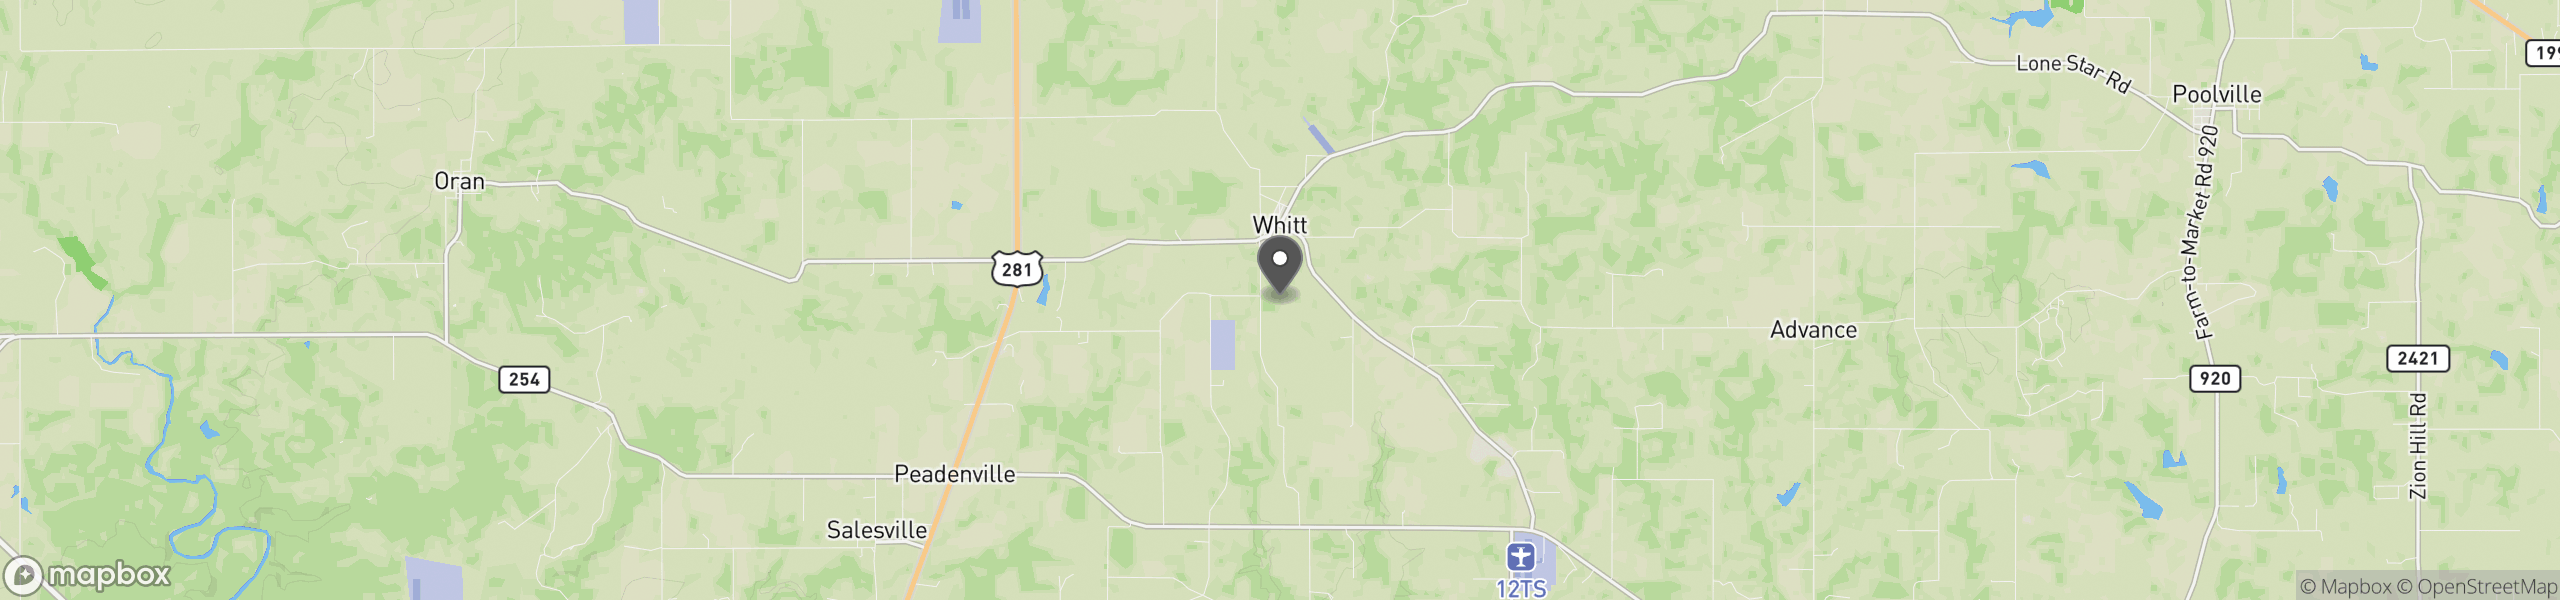 Whitt, TX 76490